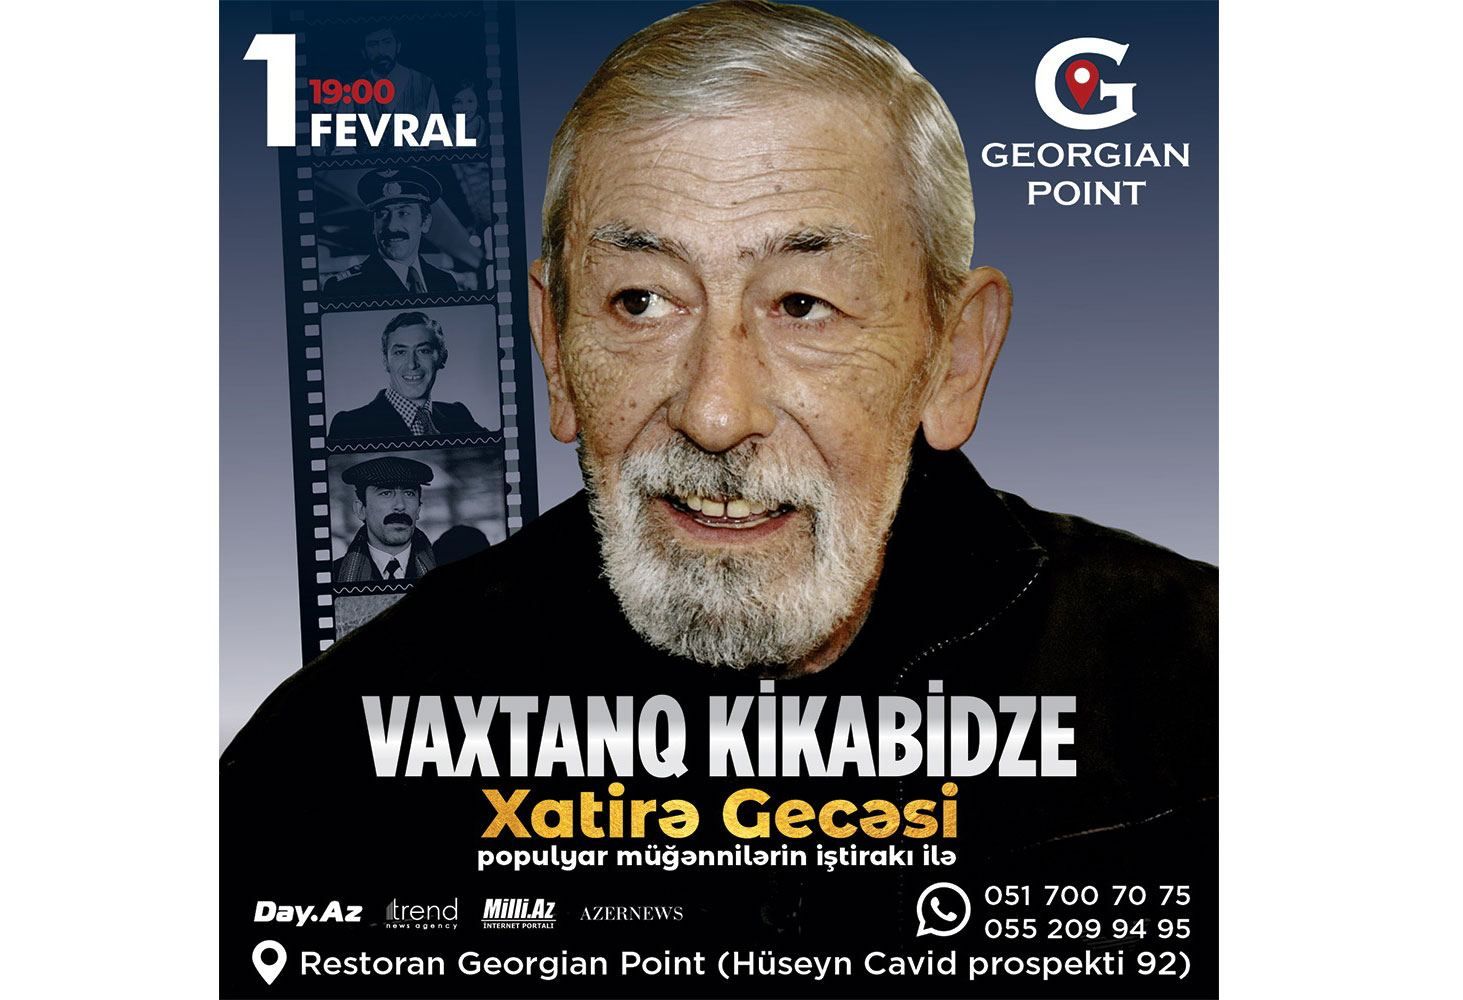 Baku to host concert in memory of Vakhtang Kikabidze